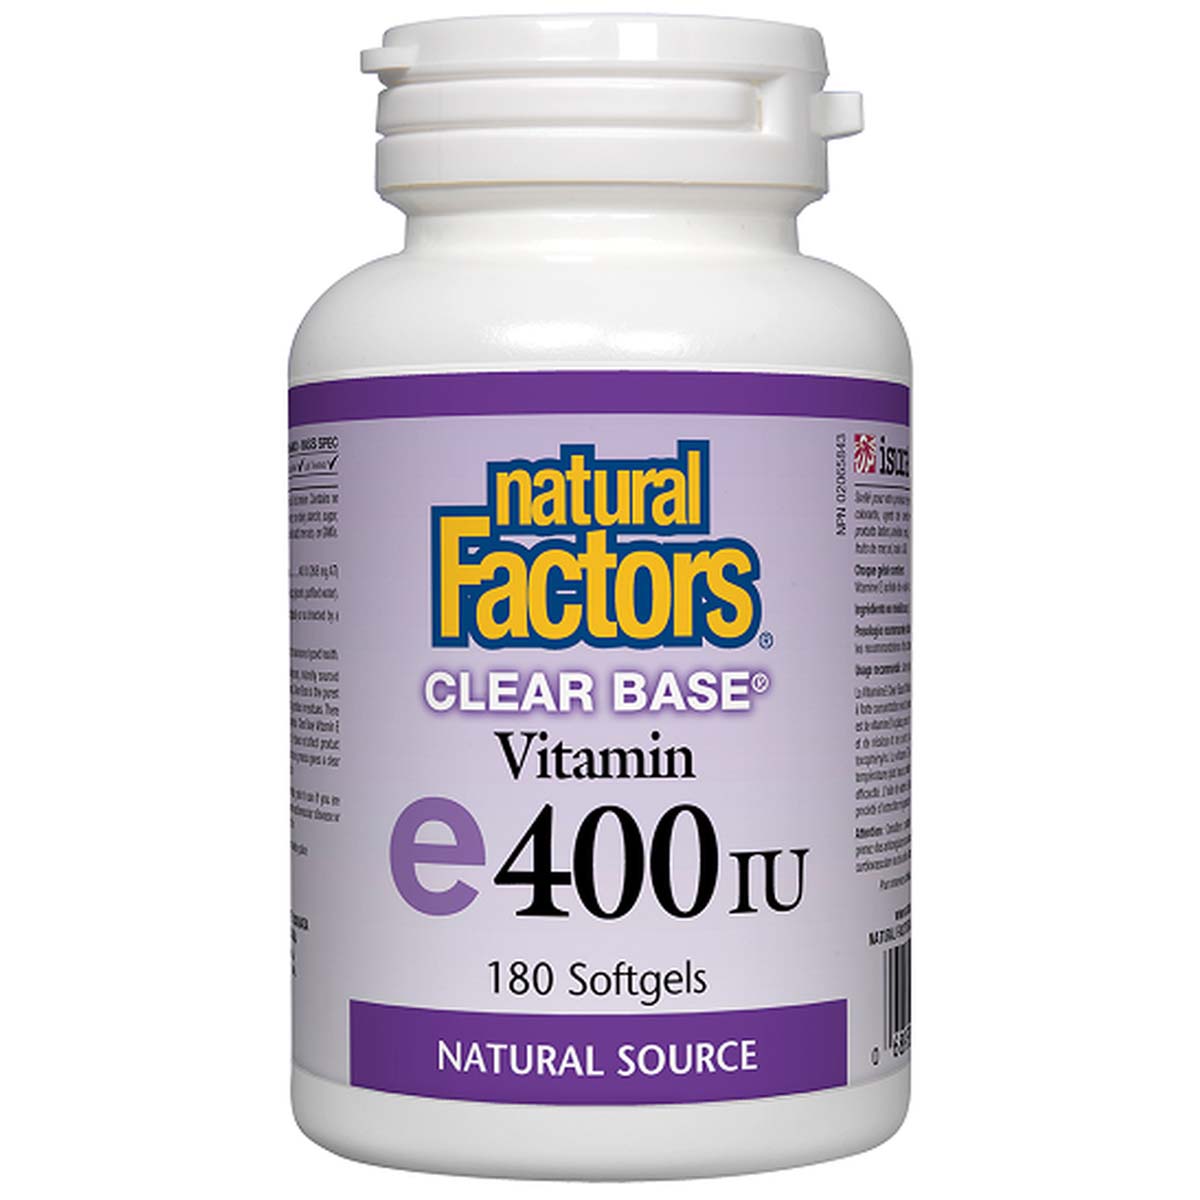 Natural Factors Clear Base Vitamin E 180 Softgels 400 IU